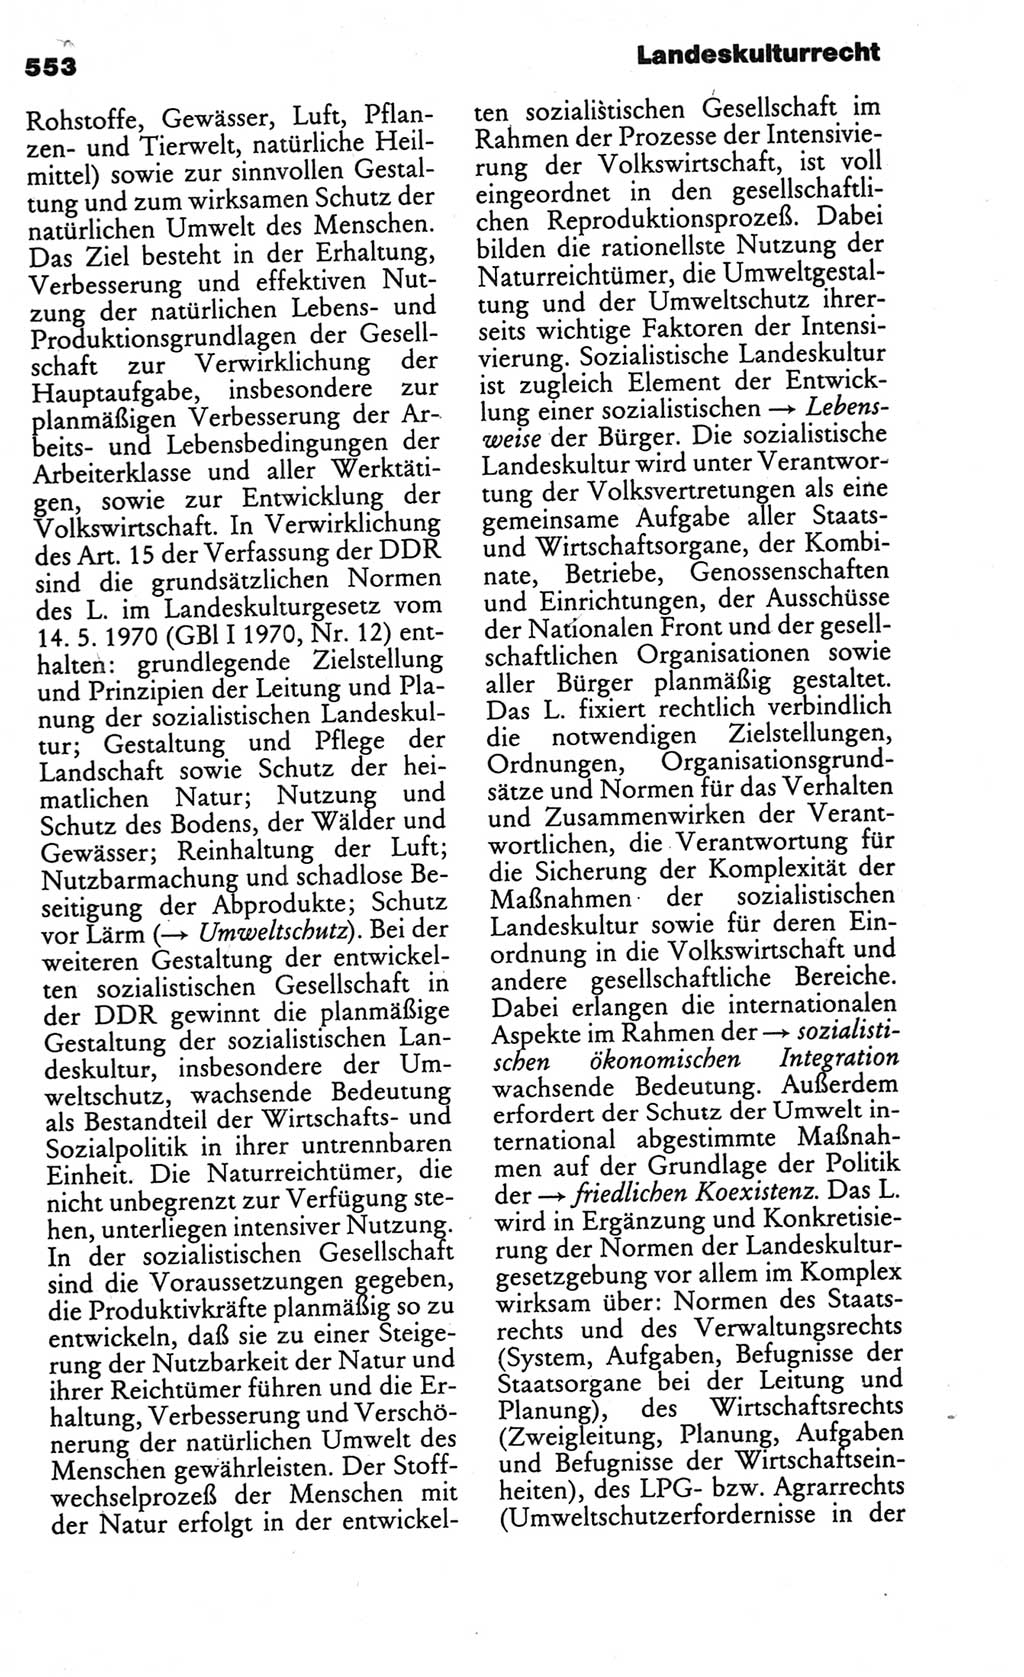 Kleines politisches Wörterbuch [Deutsche Demokratische Republik (DDR)] 1986, Seite 553 (Kl. pol. Wb. DDR 1986, S. 553)